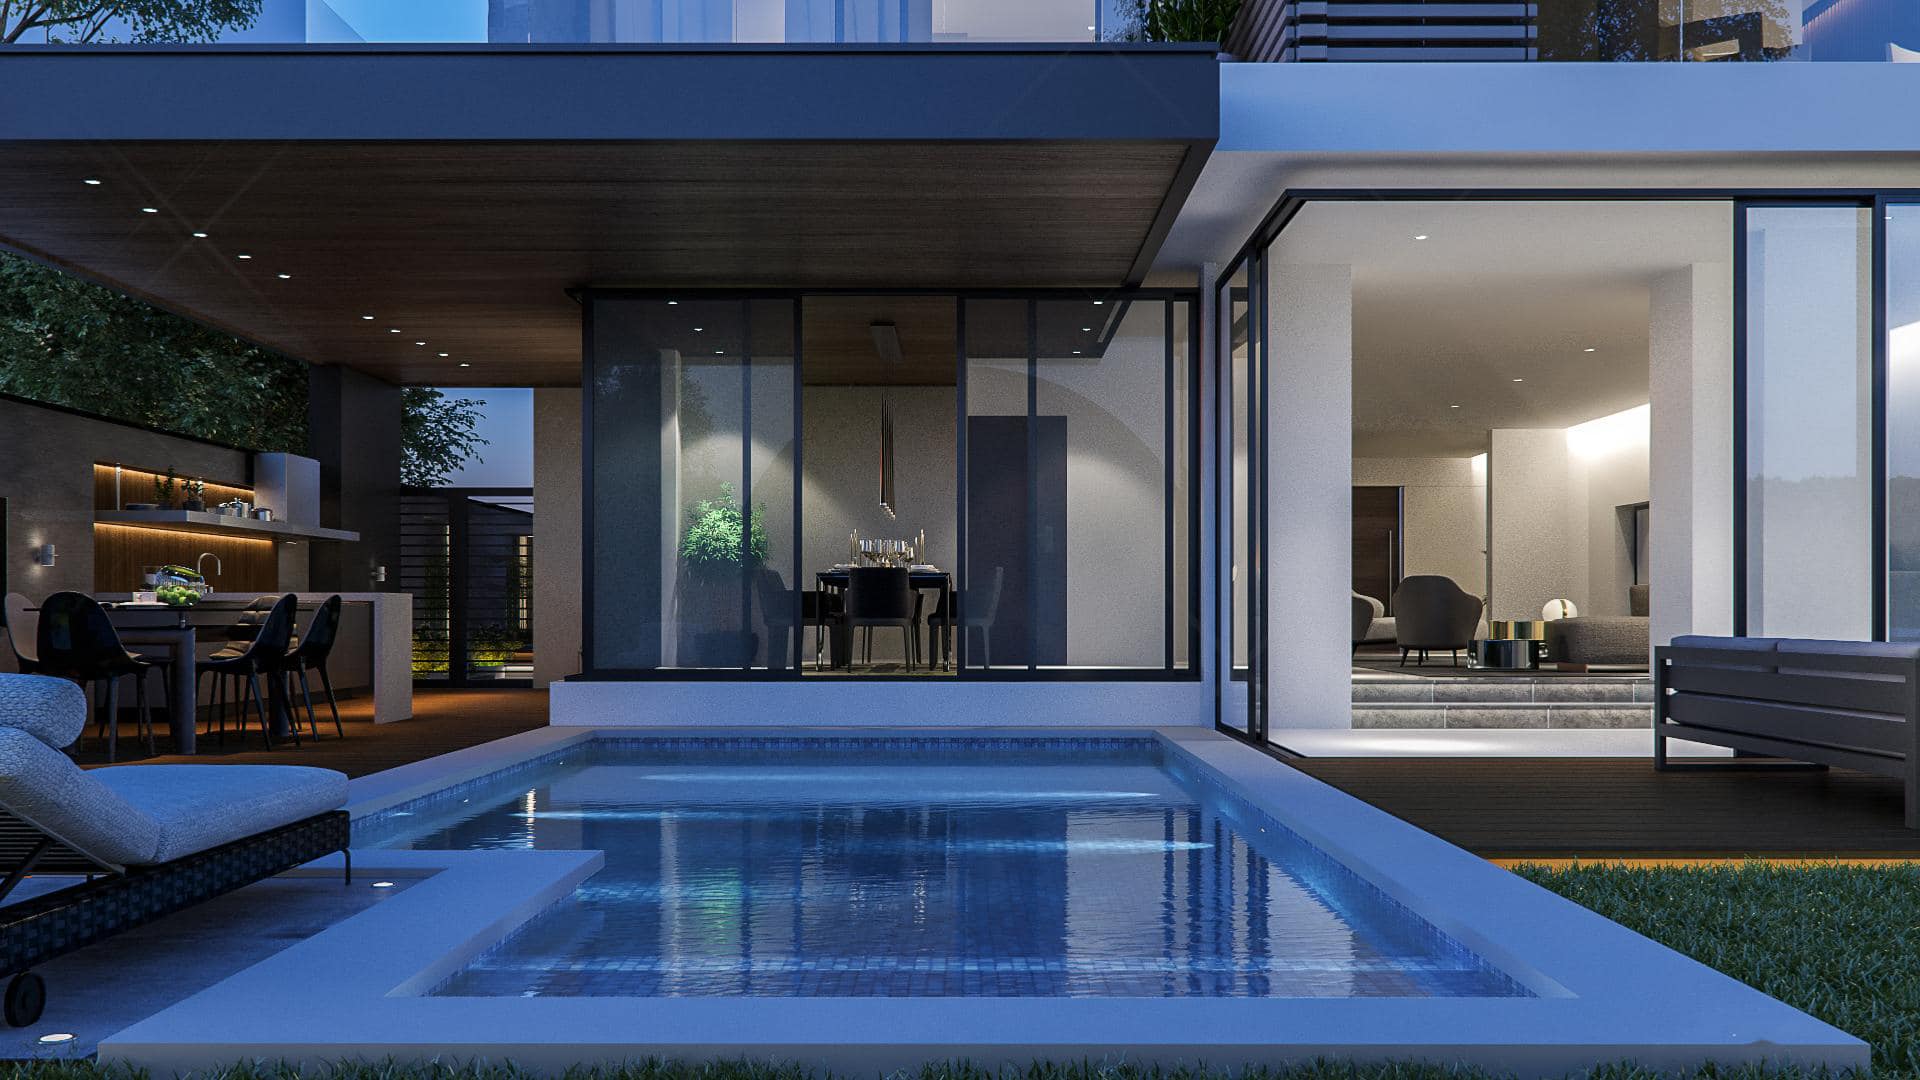 Bể bơi được thiết kế một nửa trong nhà một nửa ngoài trời